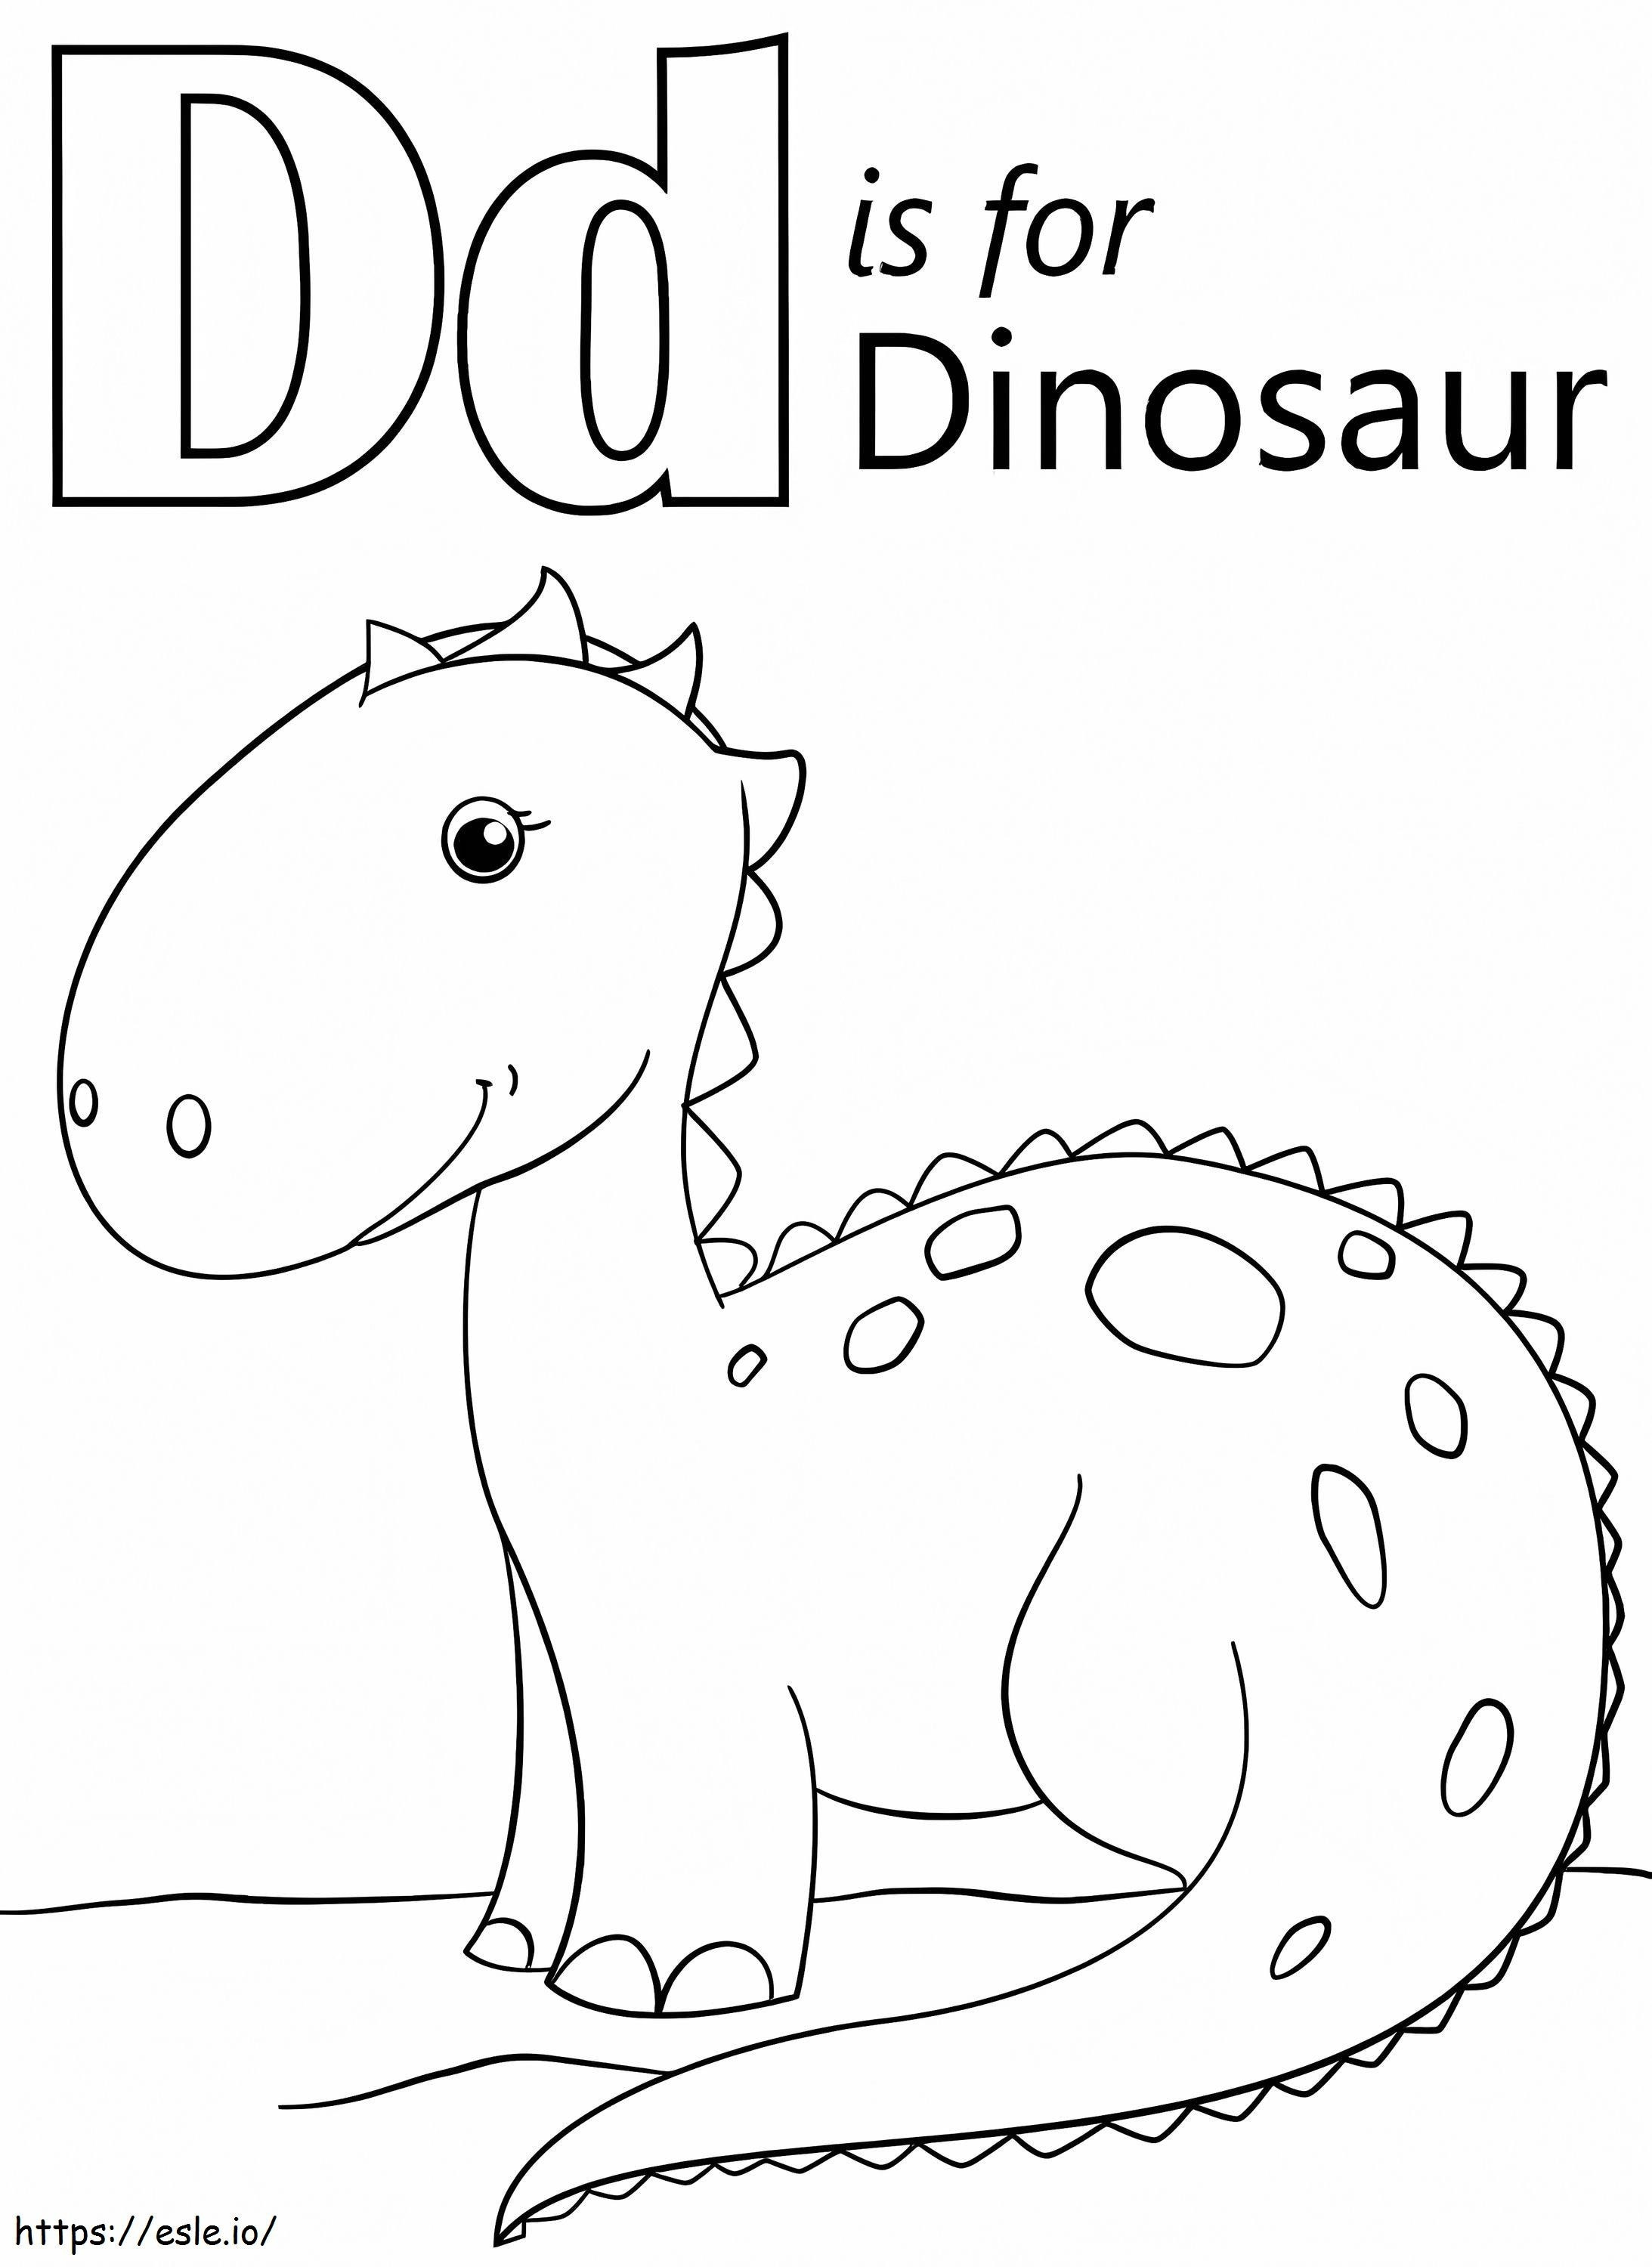 Dinossauro Letra D para colorir